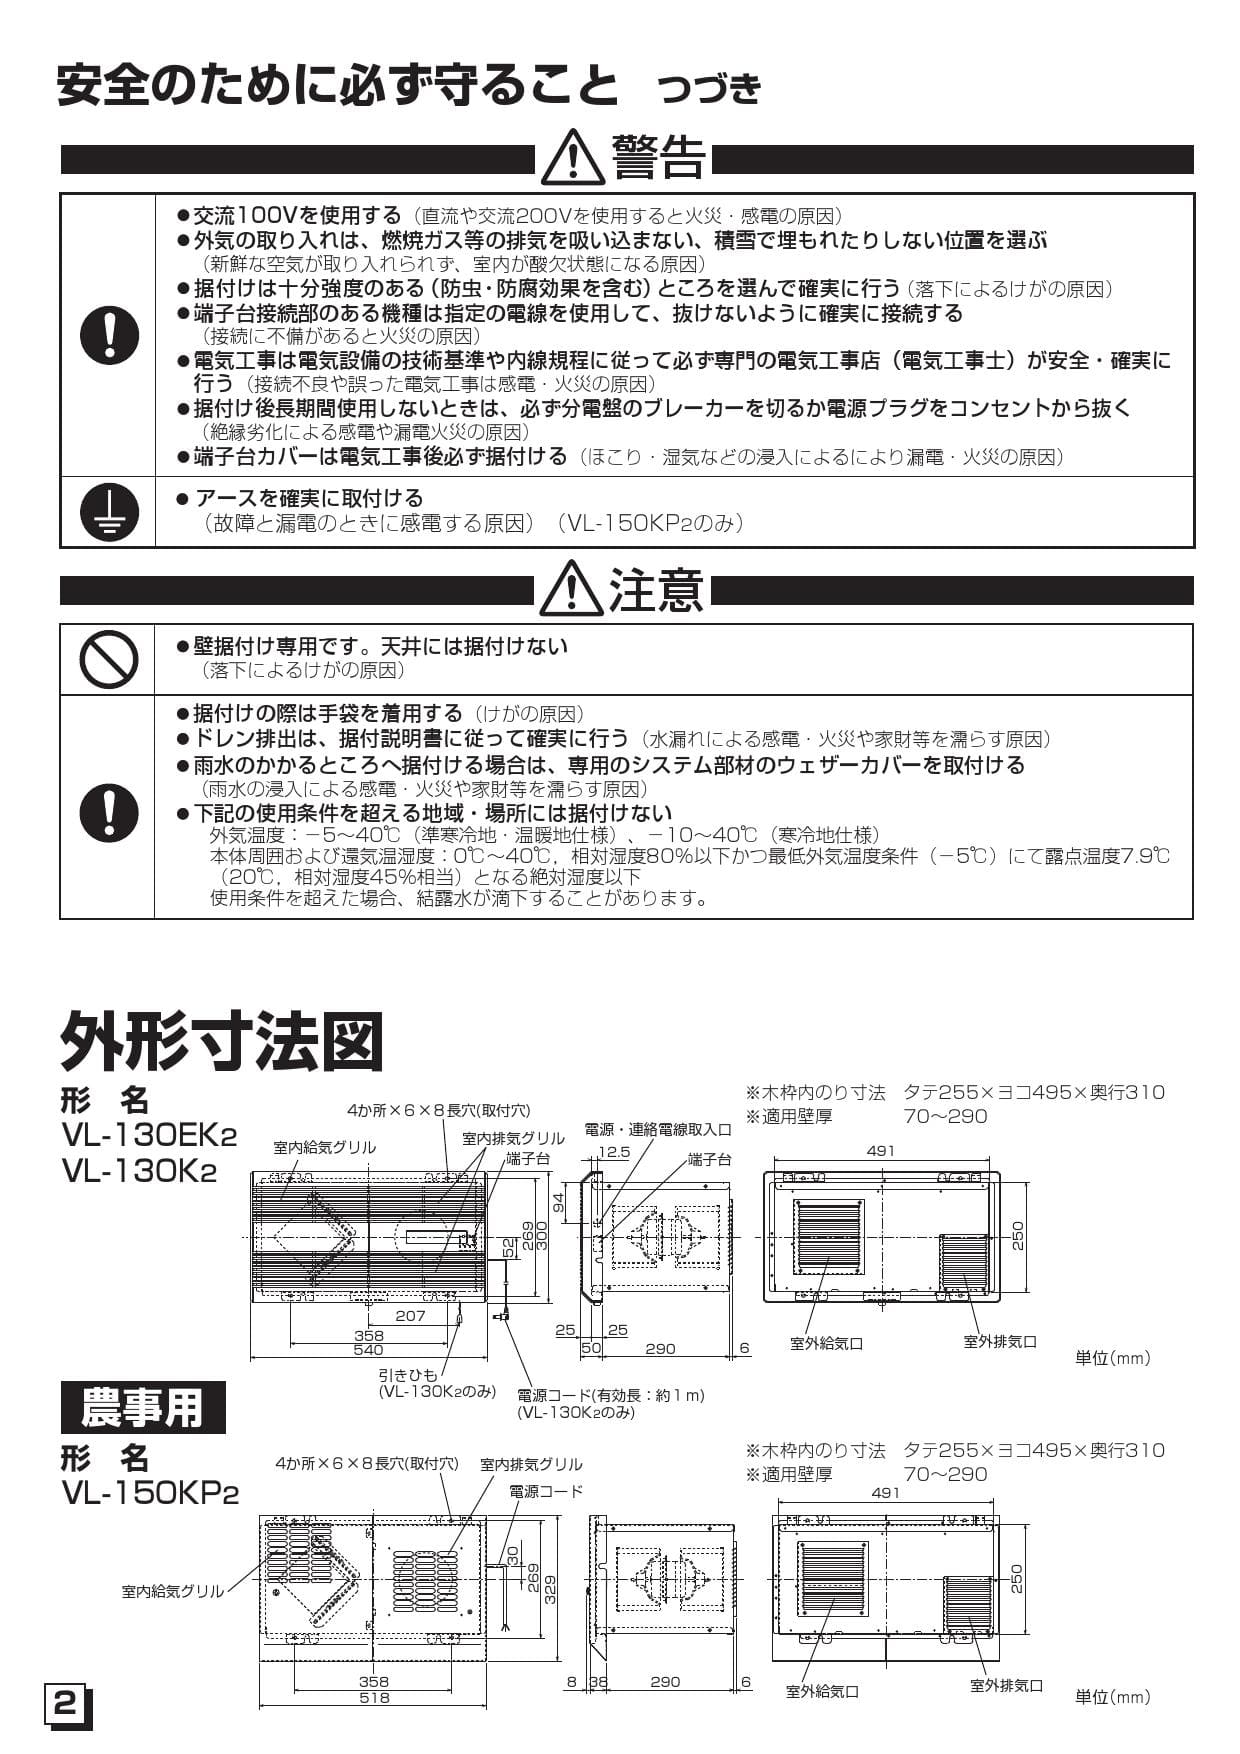 三菱電機 VL-150KP2取扱説明書 施工説明書 納入仕様図 | 通販 プロストア ダイレクト